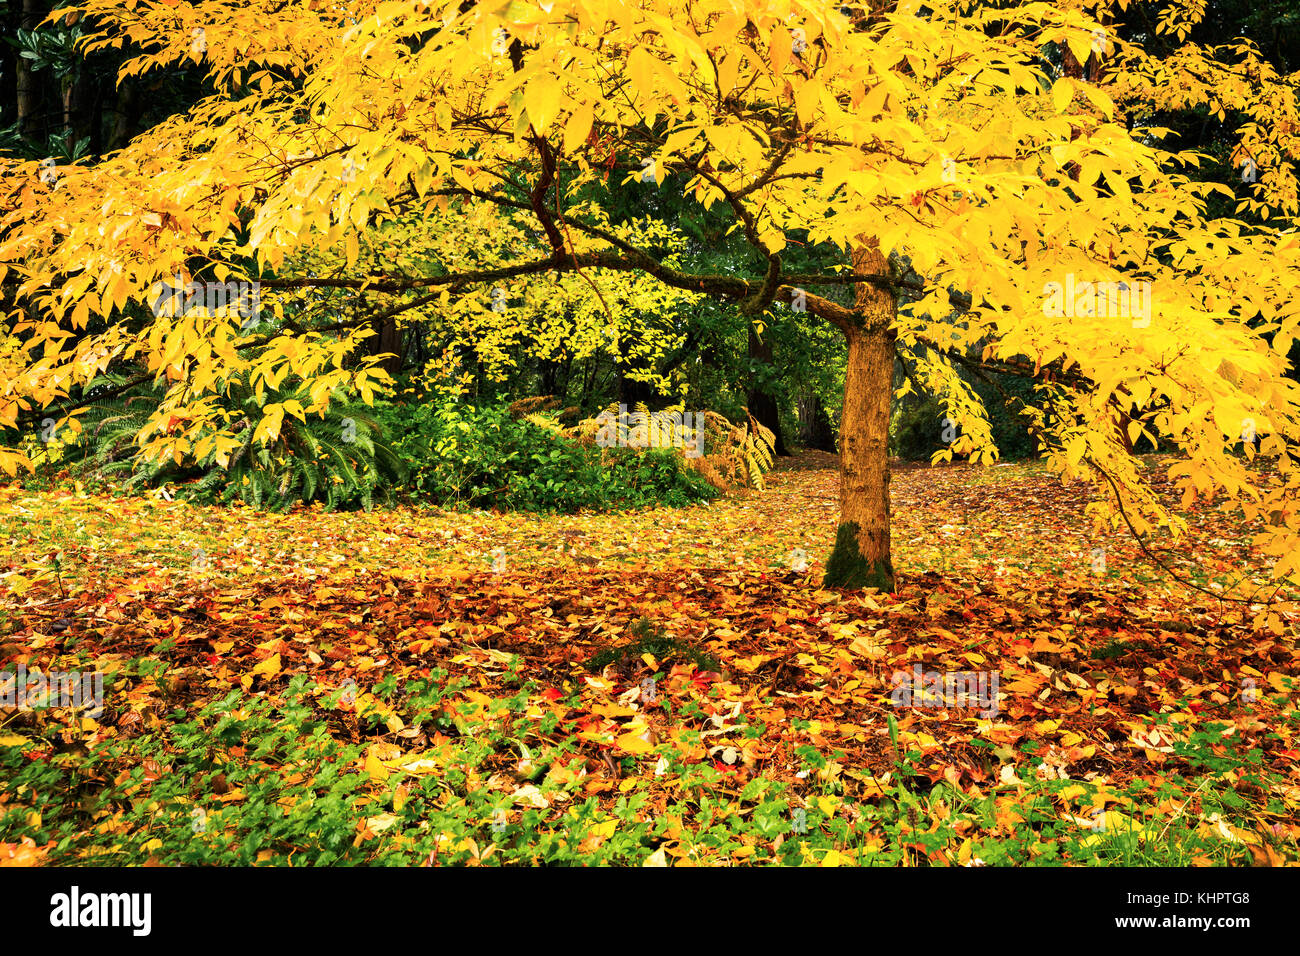 Baum mit Gelb Herbst Laub in Seattle, Washington Park Arboretum botanischer Garten Stockfoto